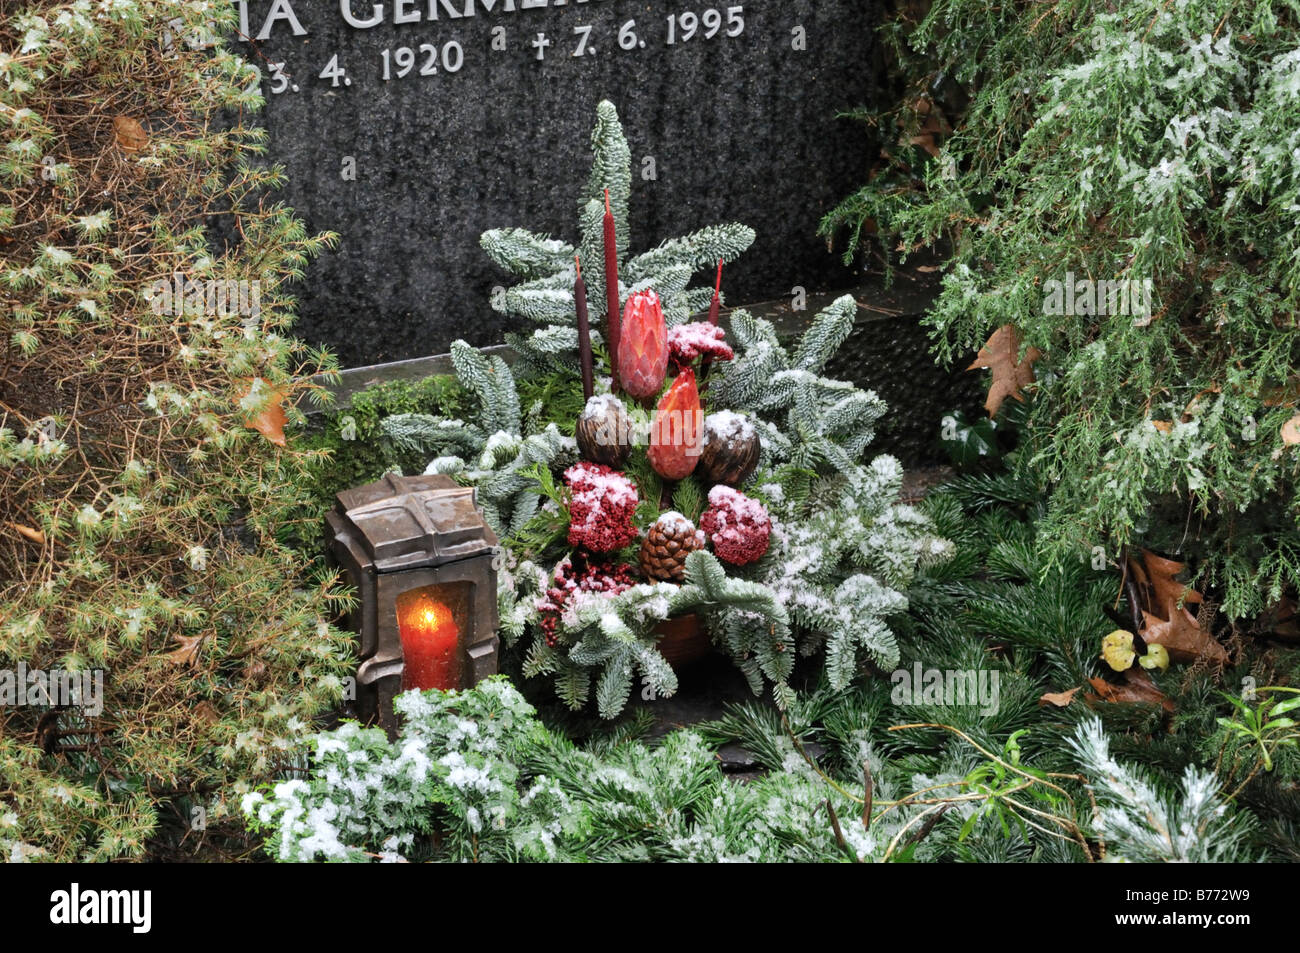 Grab Dekoration mit Tannenzweigen und gefärbte Teile der Pflanze  Stockfotografie - Alamy